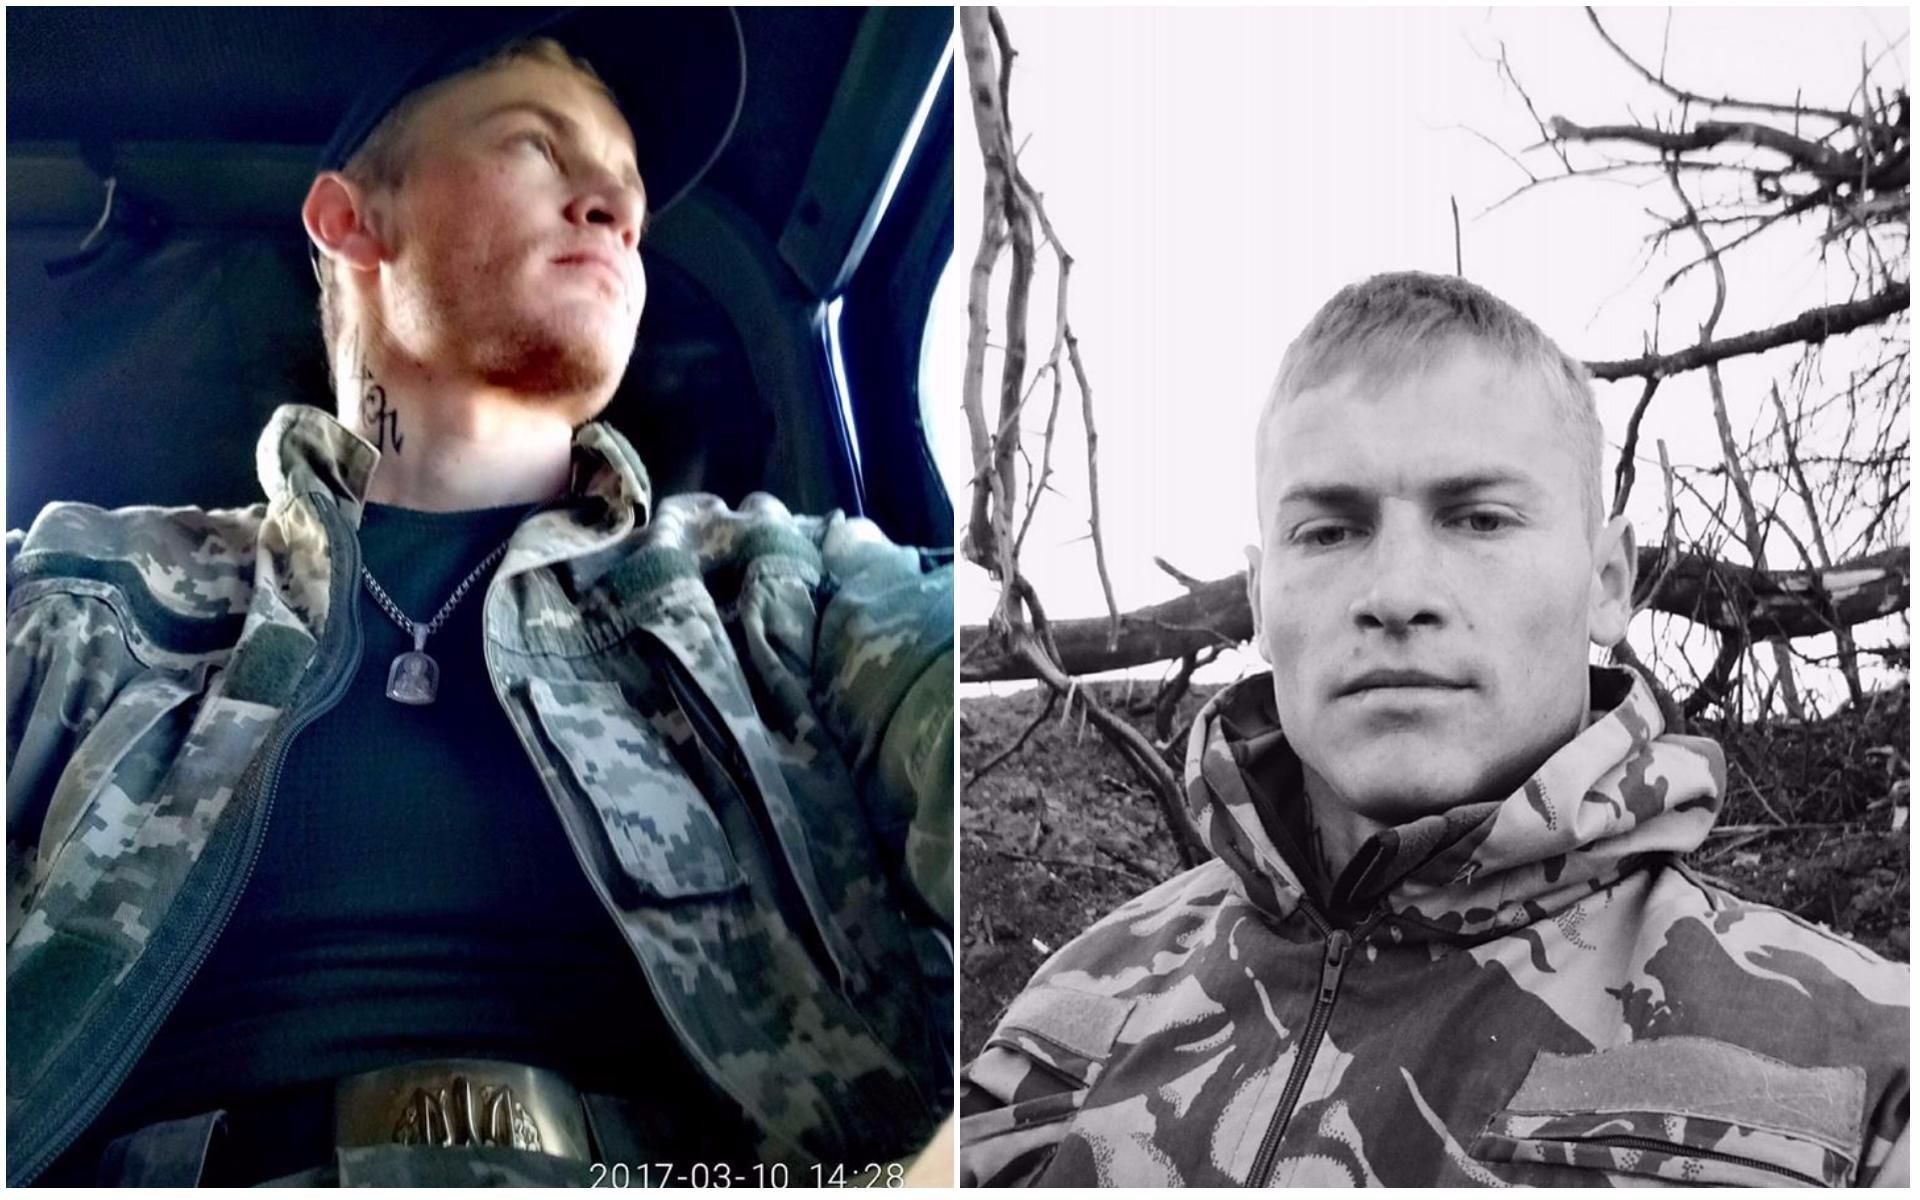 Слава Герою. Волонтер показал фото украинского бойца, которого убил снайпер